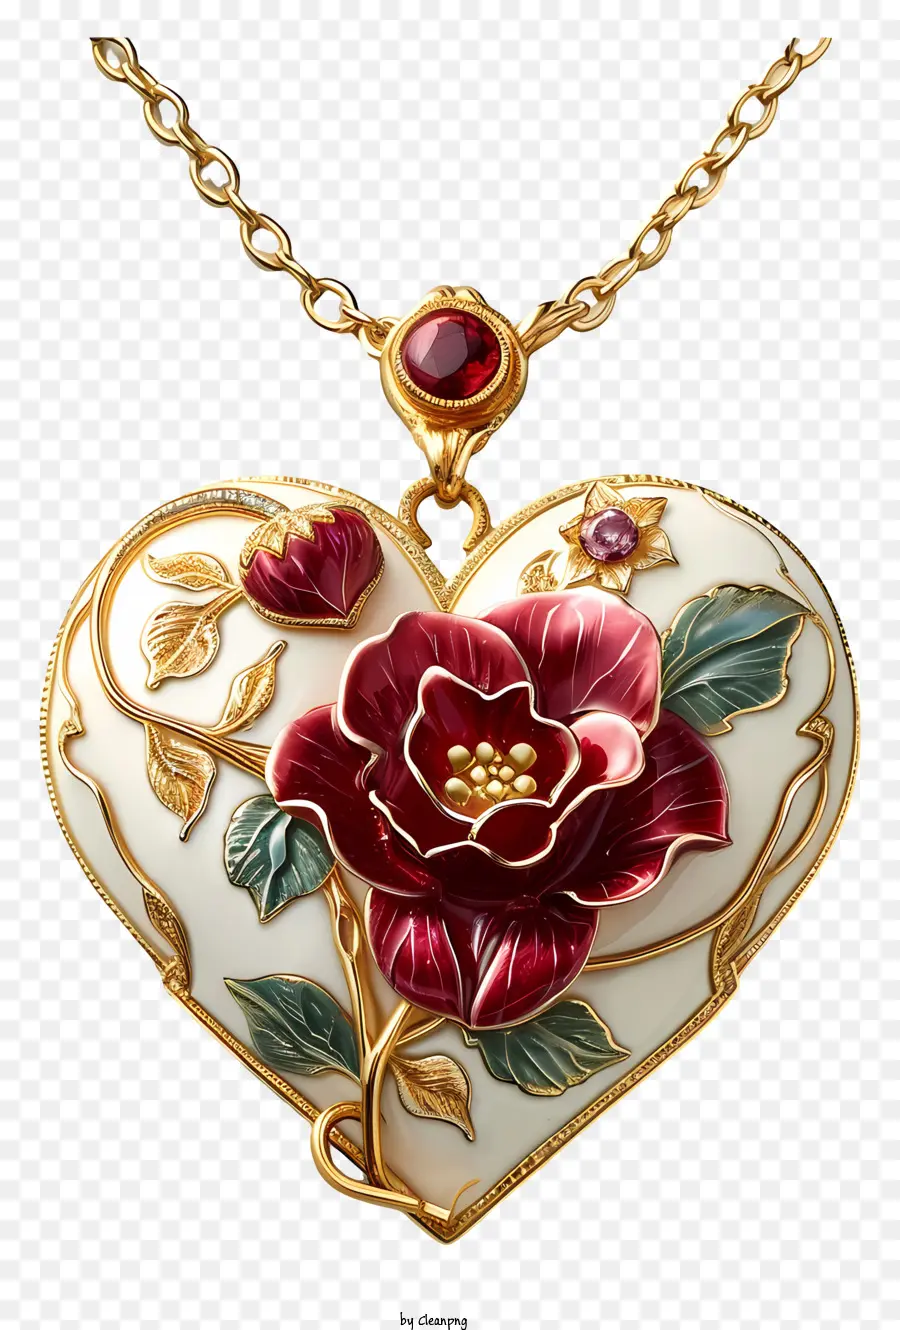 rosa rossa - Larmessetto per il cuore con rosa, filigrana d'oro, pietre preziose